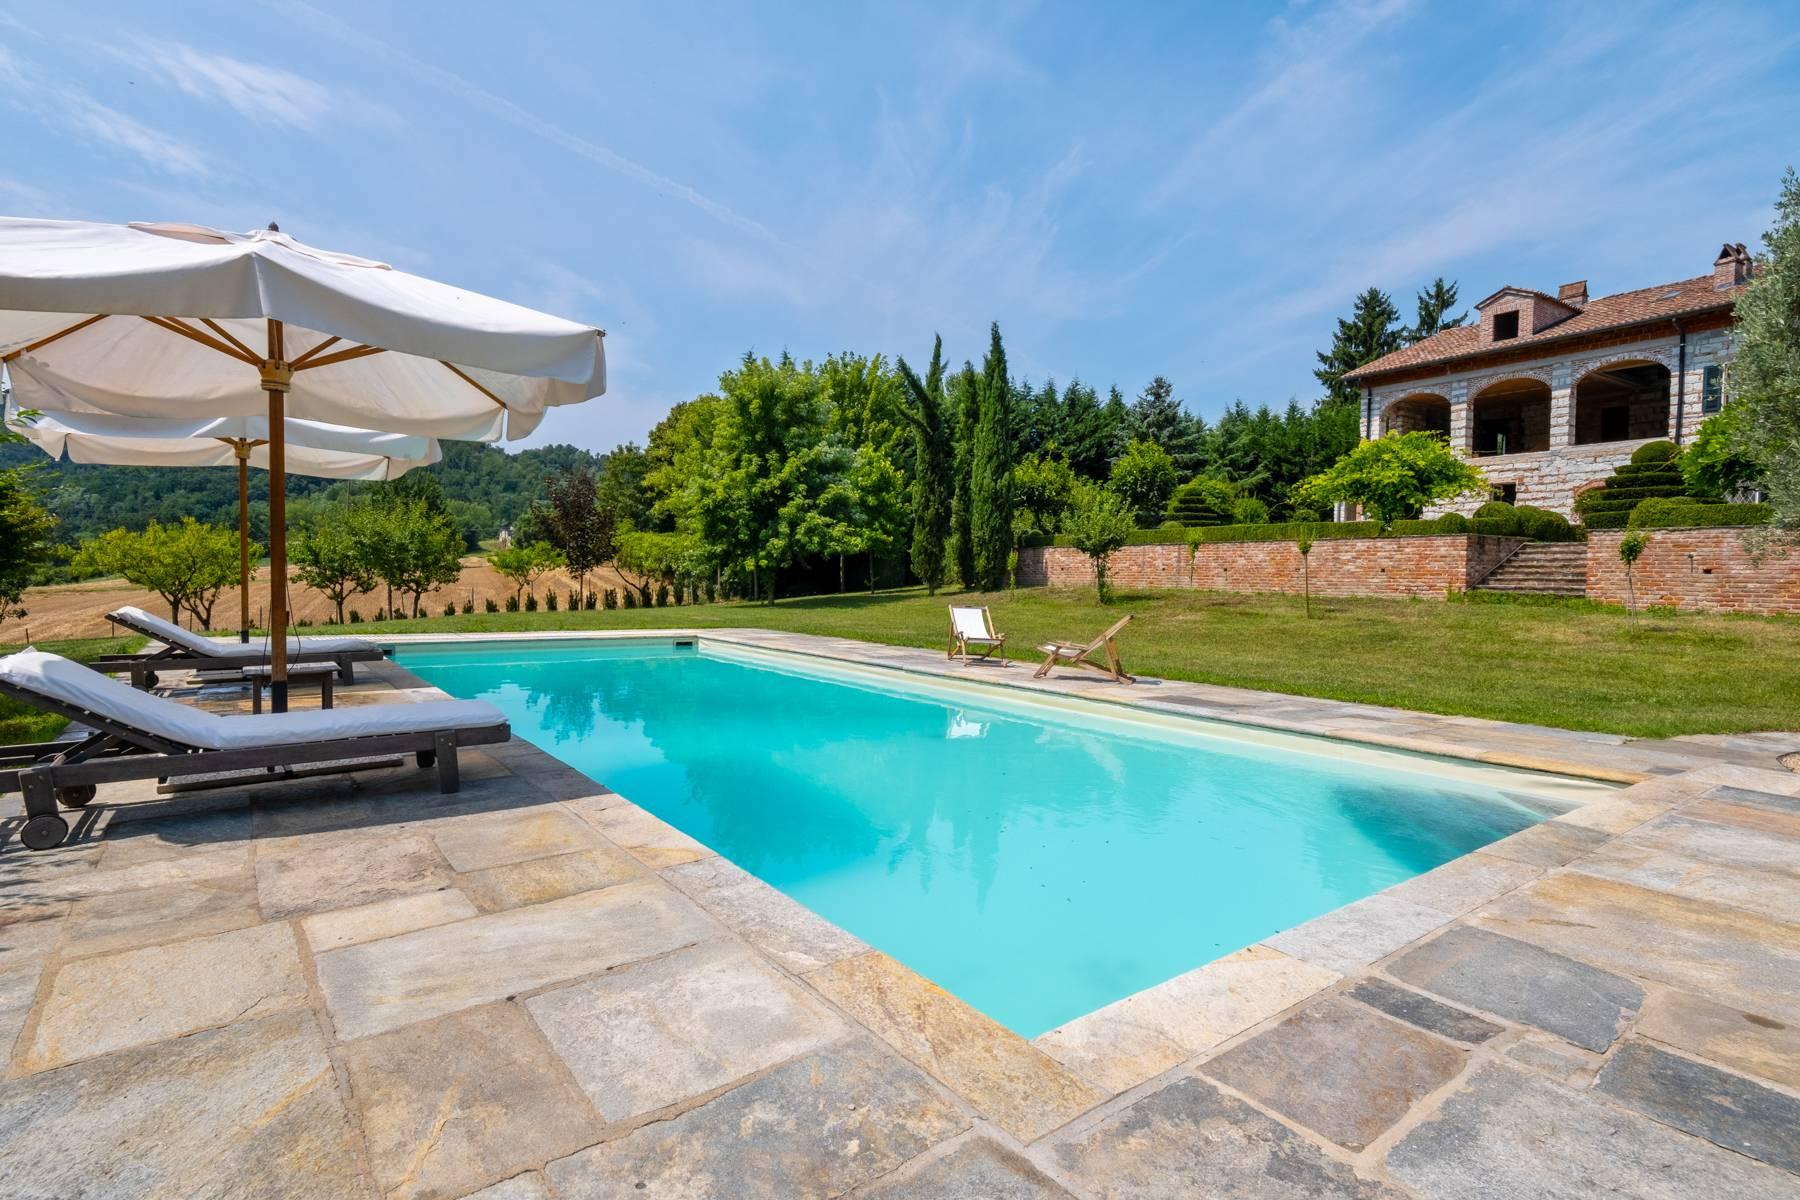 Affascinante casale con piscina nel verde delle colline del Monferrato - 11